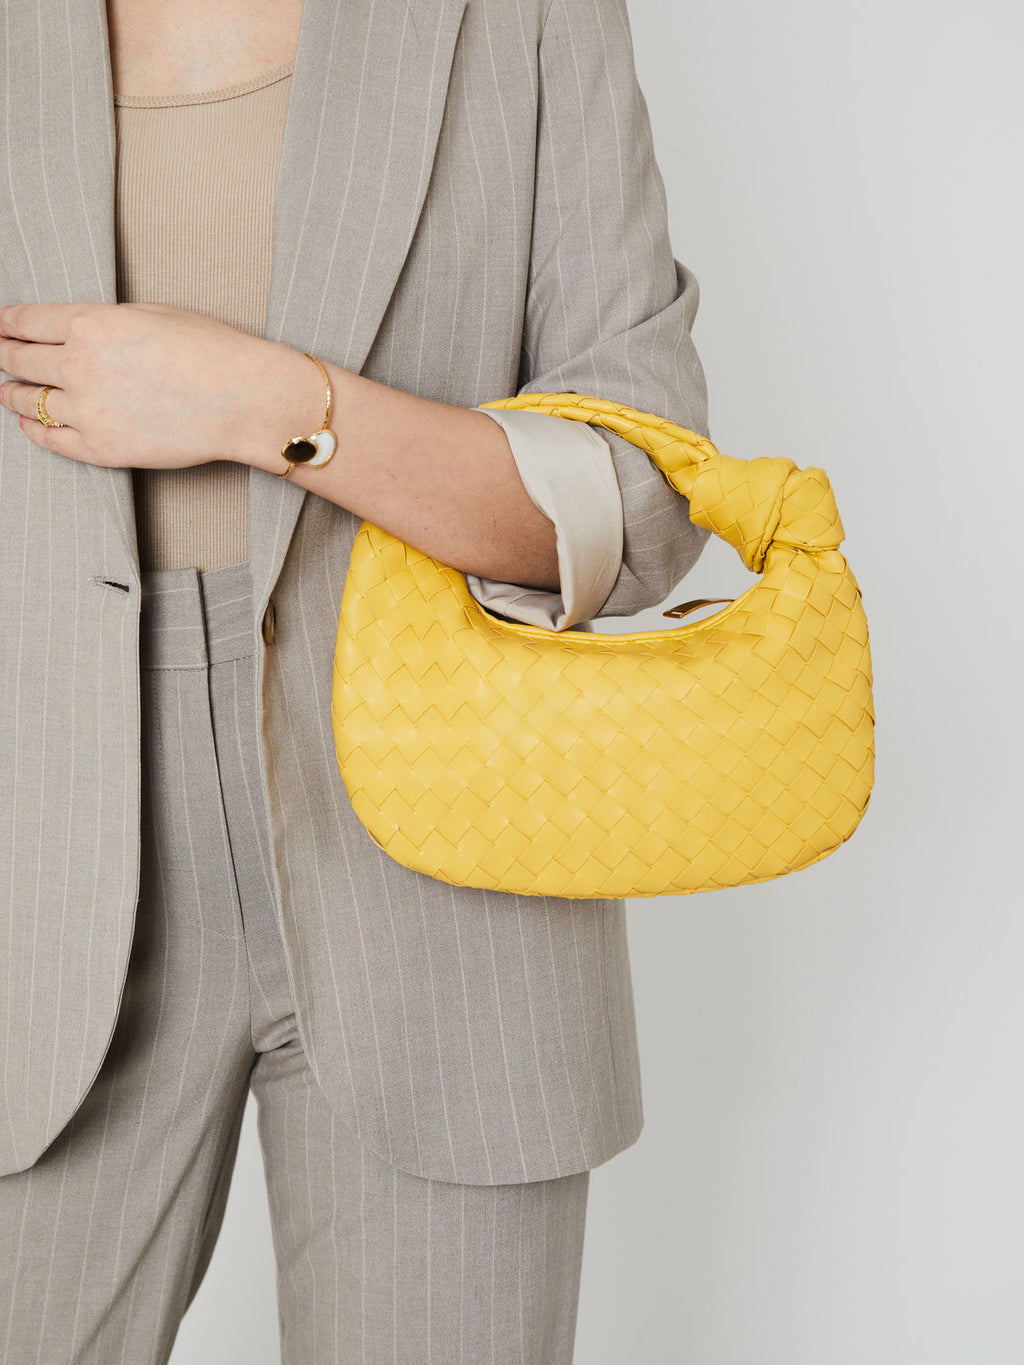 Stylish small yellow purse for women 